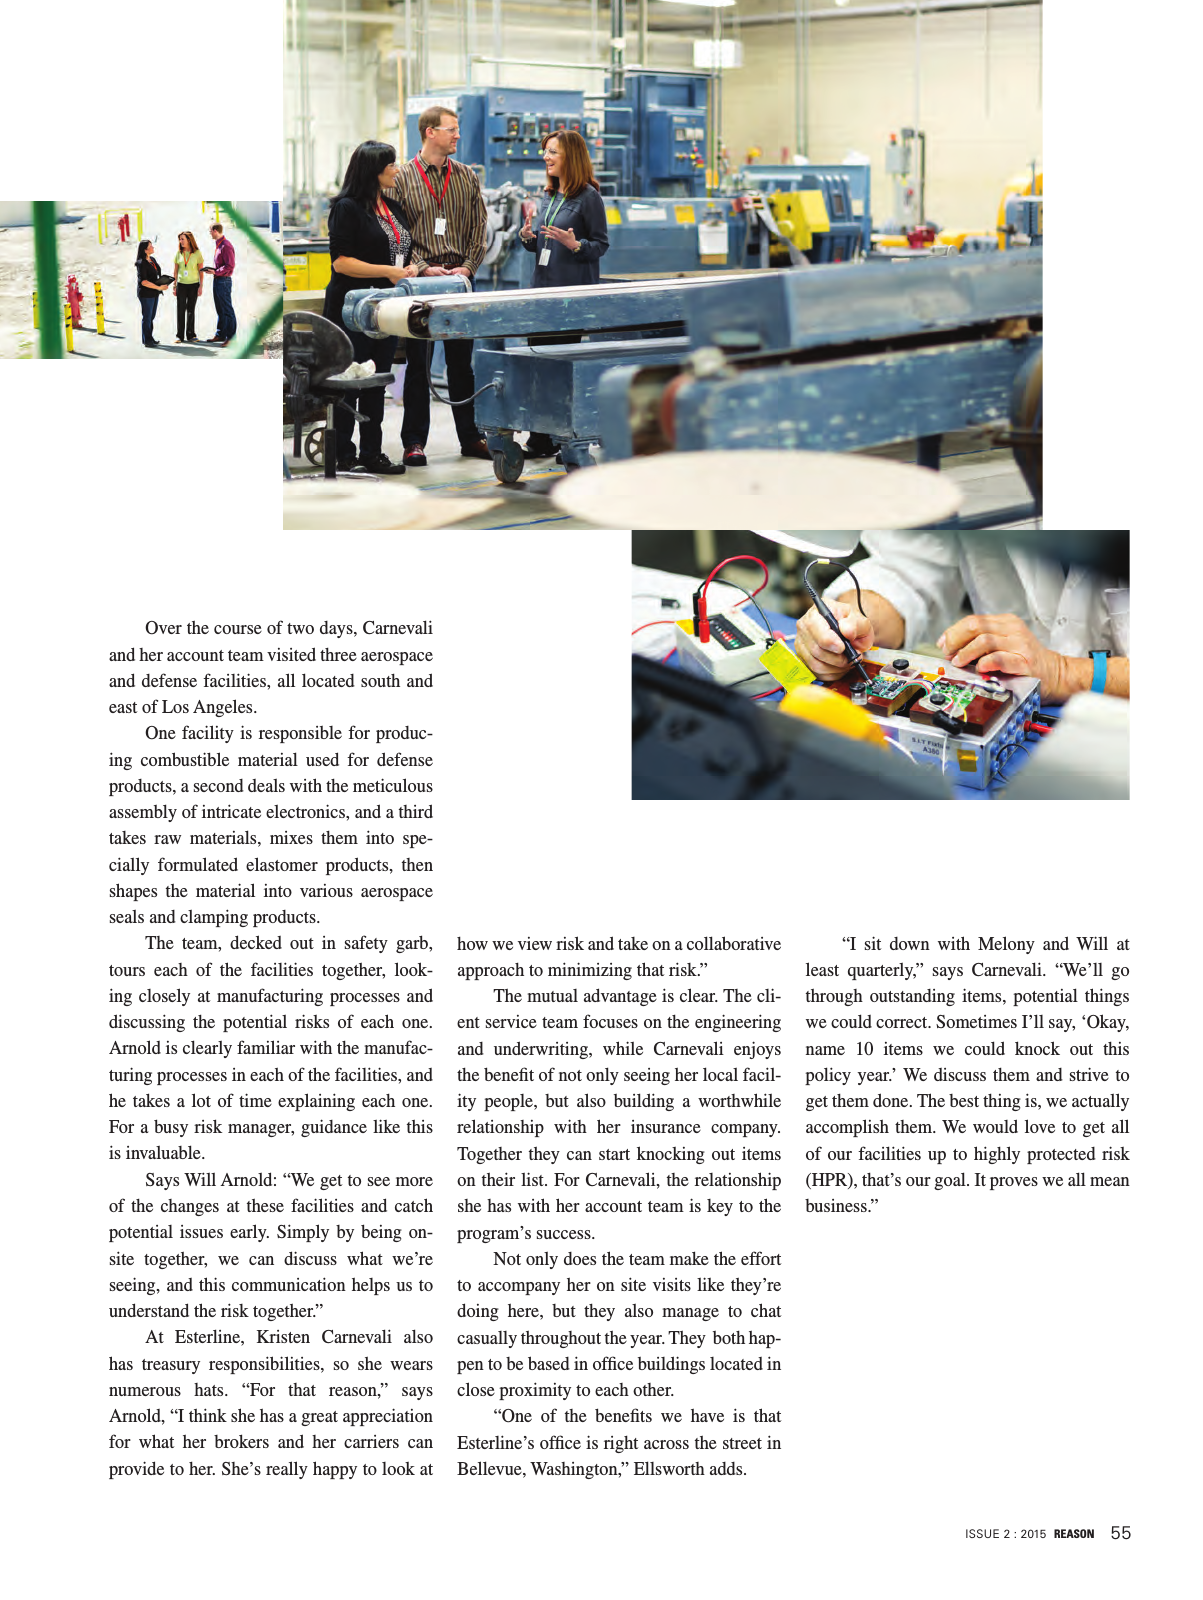 Vorschau Reason Magazine Issue 2 2015 Seite 55